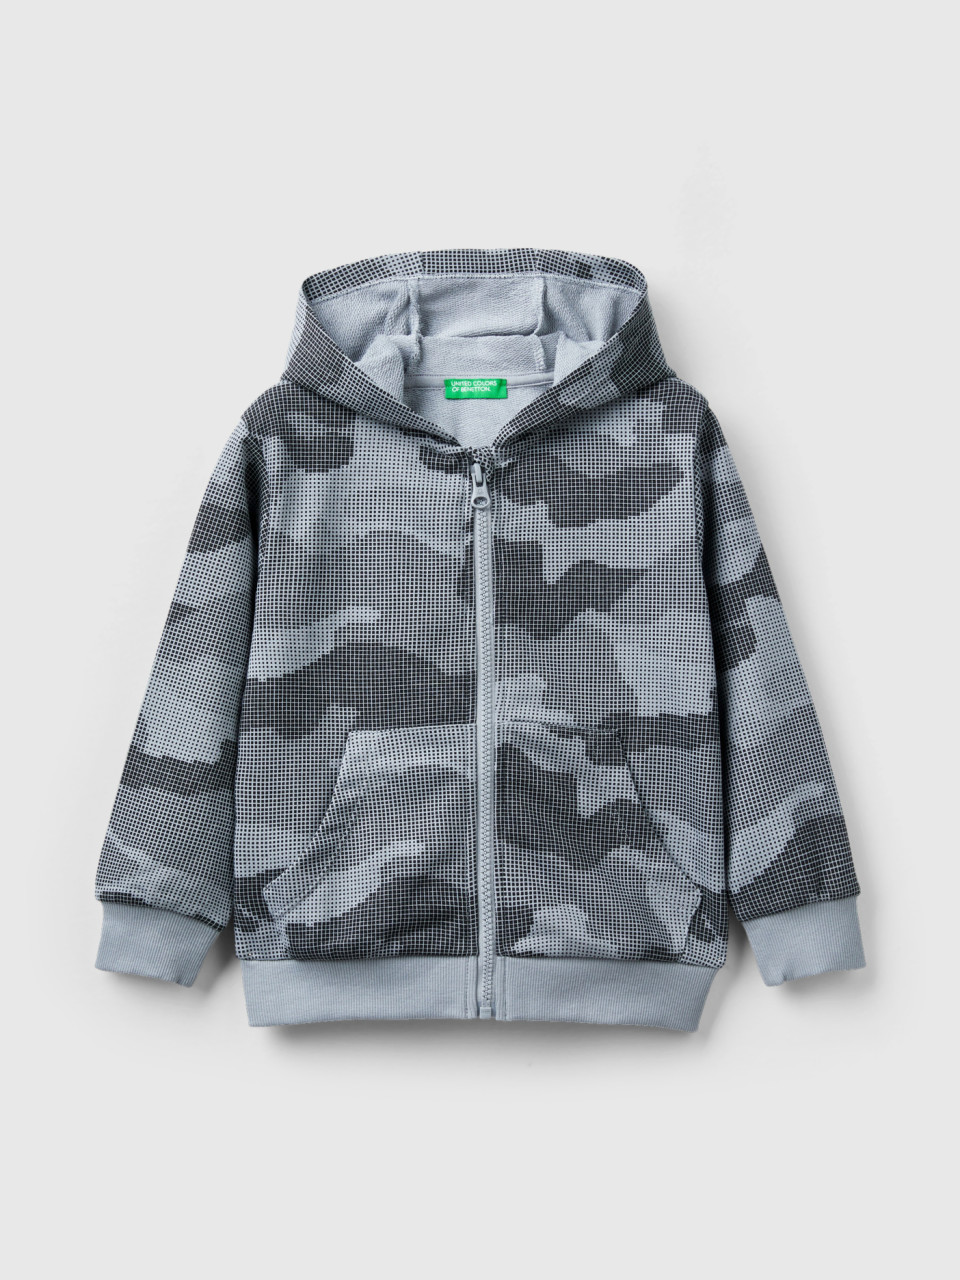 Benetton, Camouflage Sweatshirt, Gray, Kids